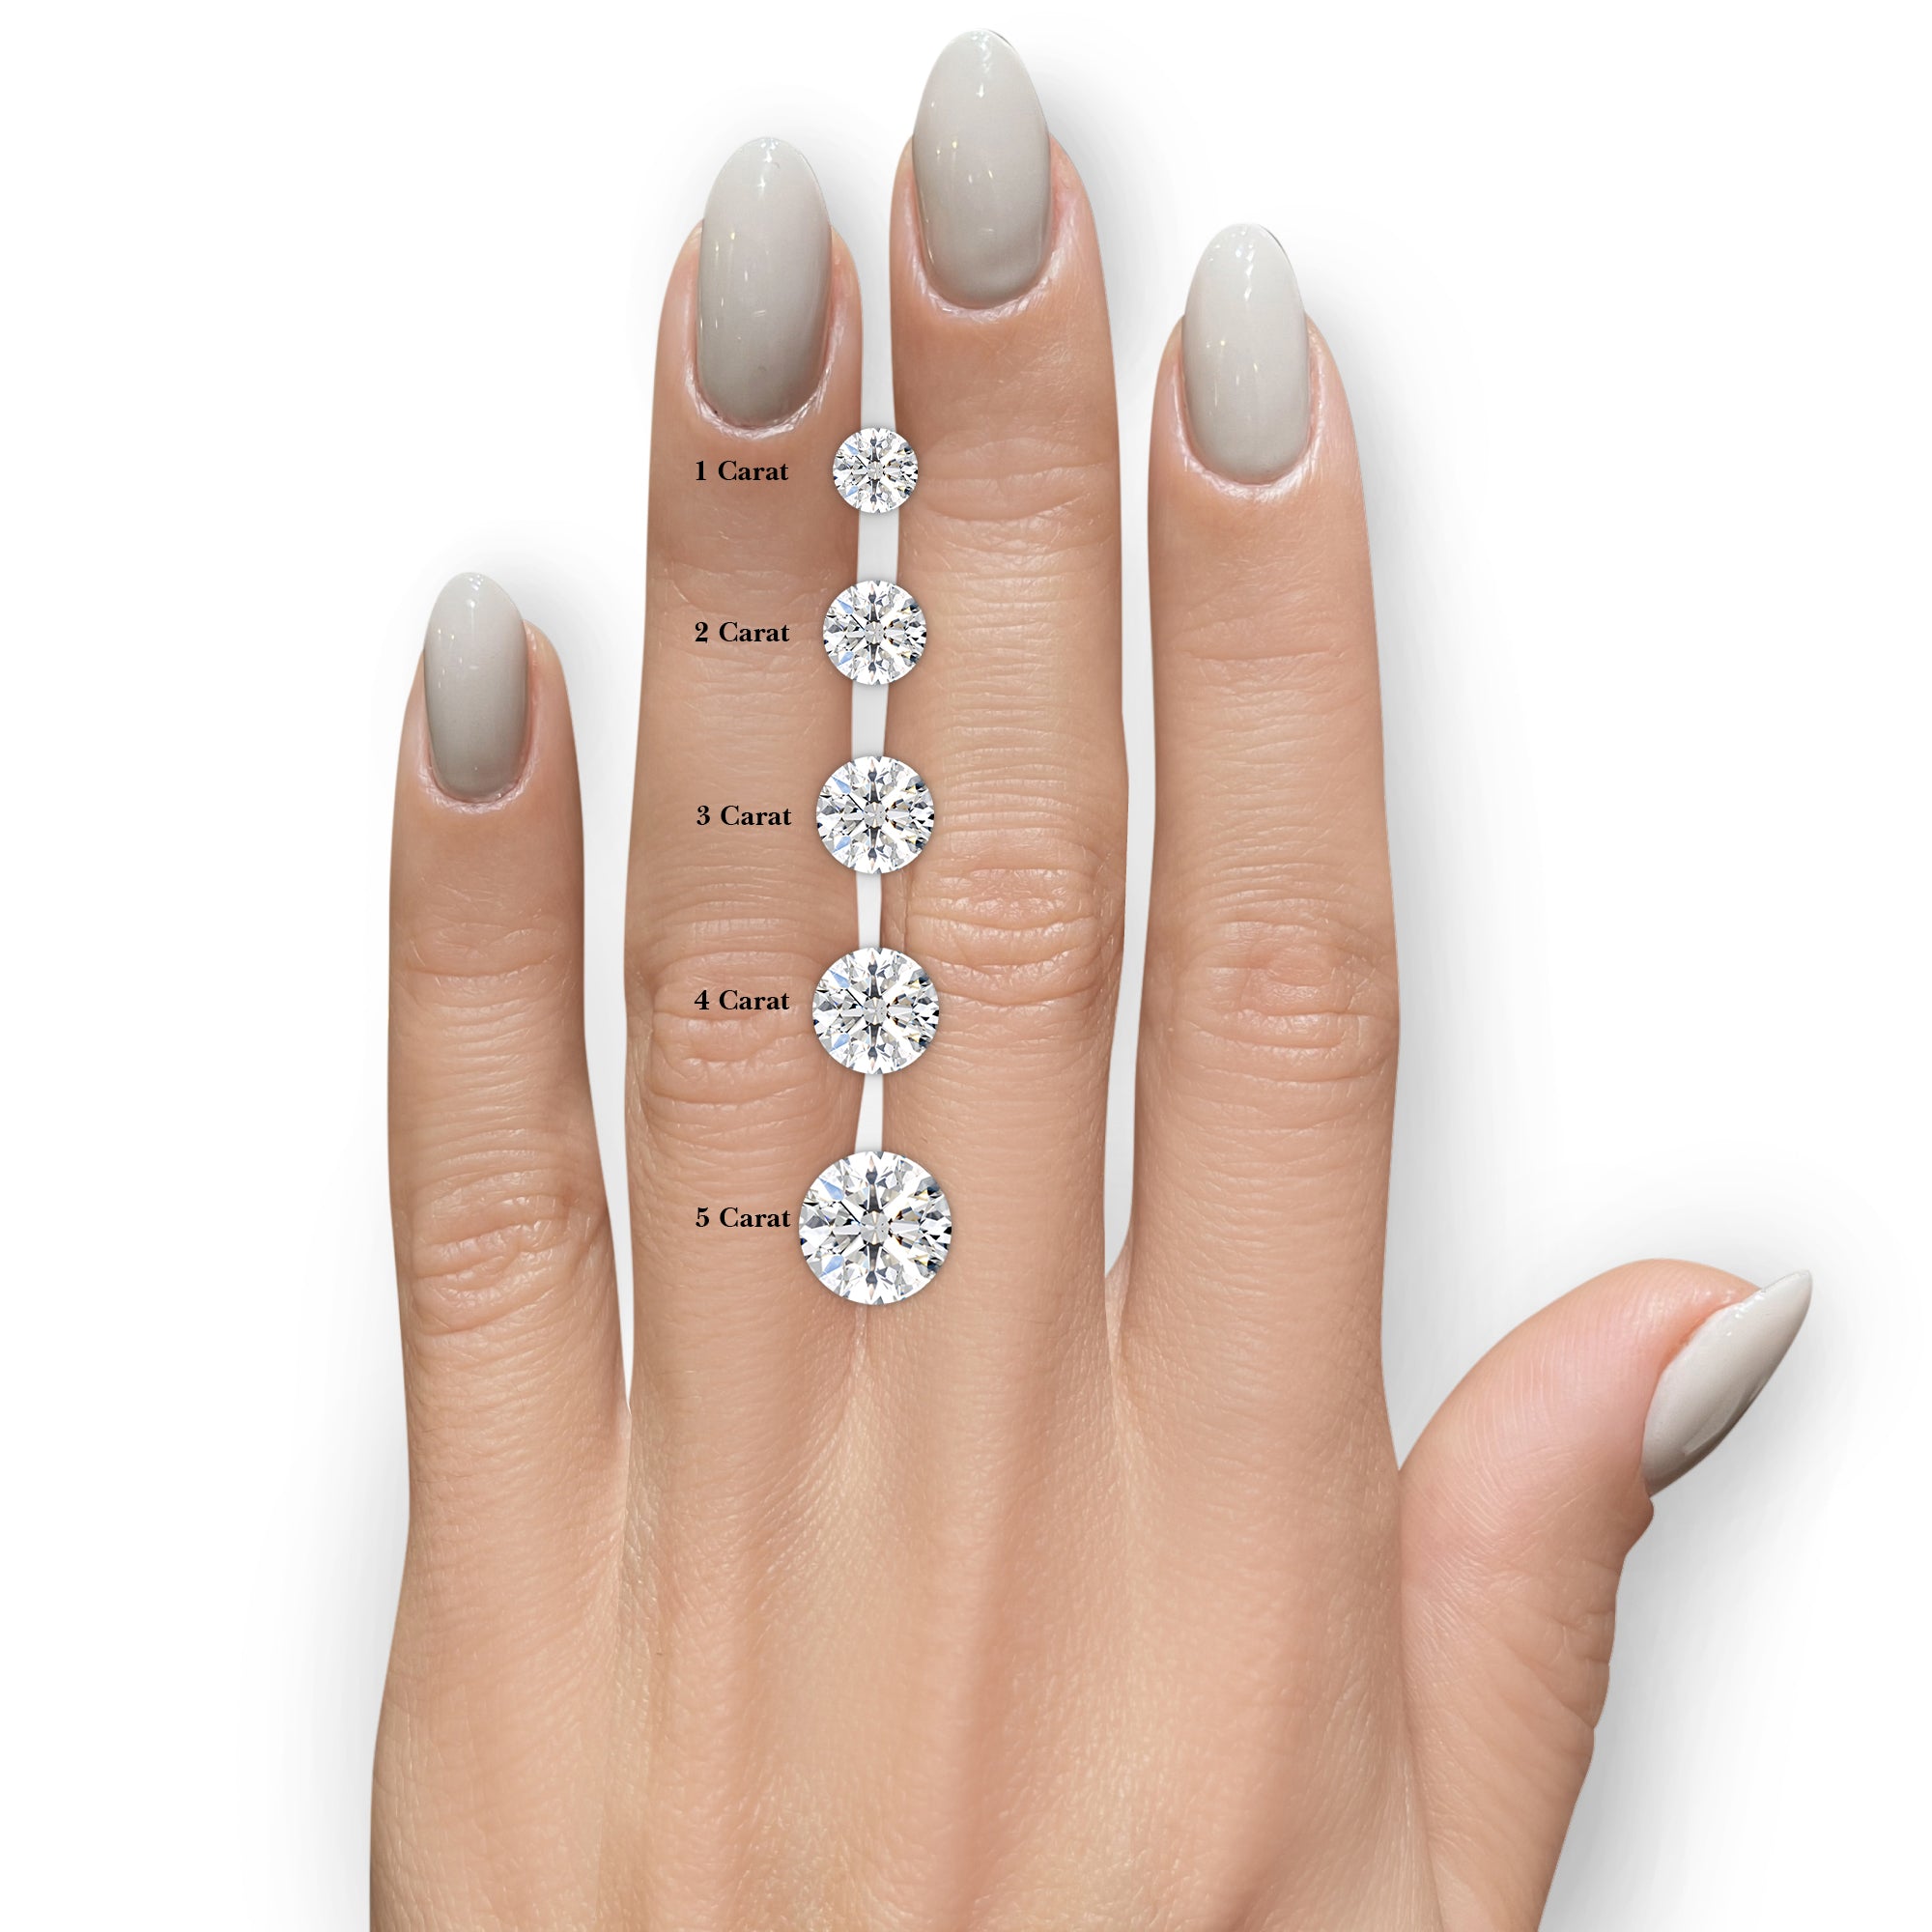 Natalie Diamond Engagement Ring -14K Rose Gold